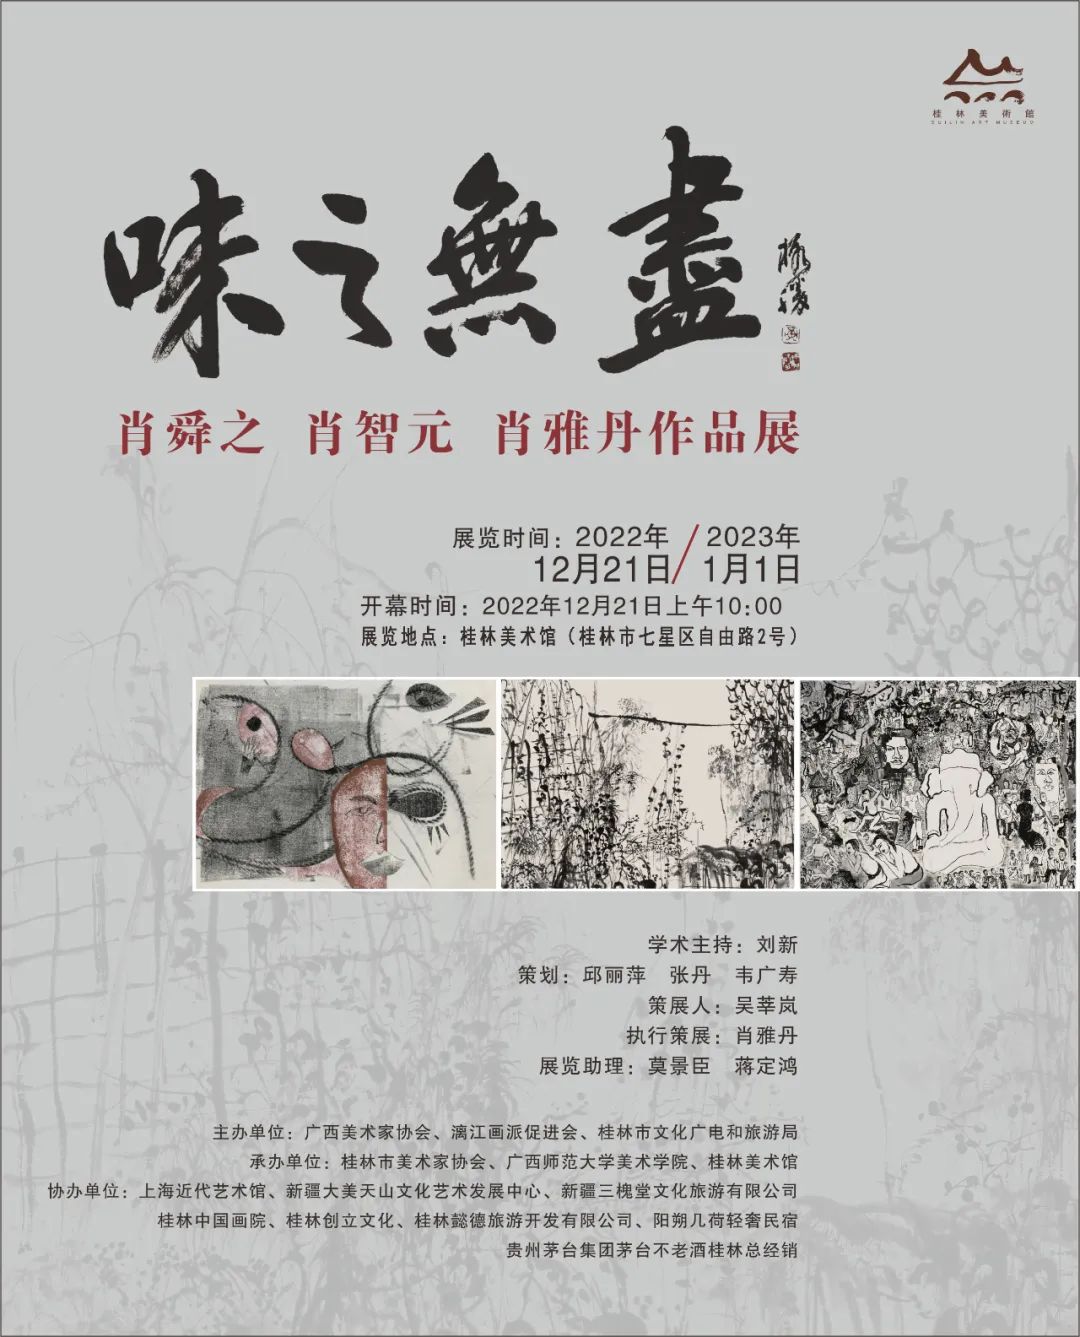 青年画家肖雅丹应邀参展，“味之无尽——肖舜之 肖智元 肖雅丹作品展”将在桂林开展